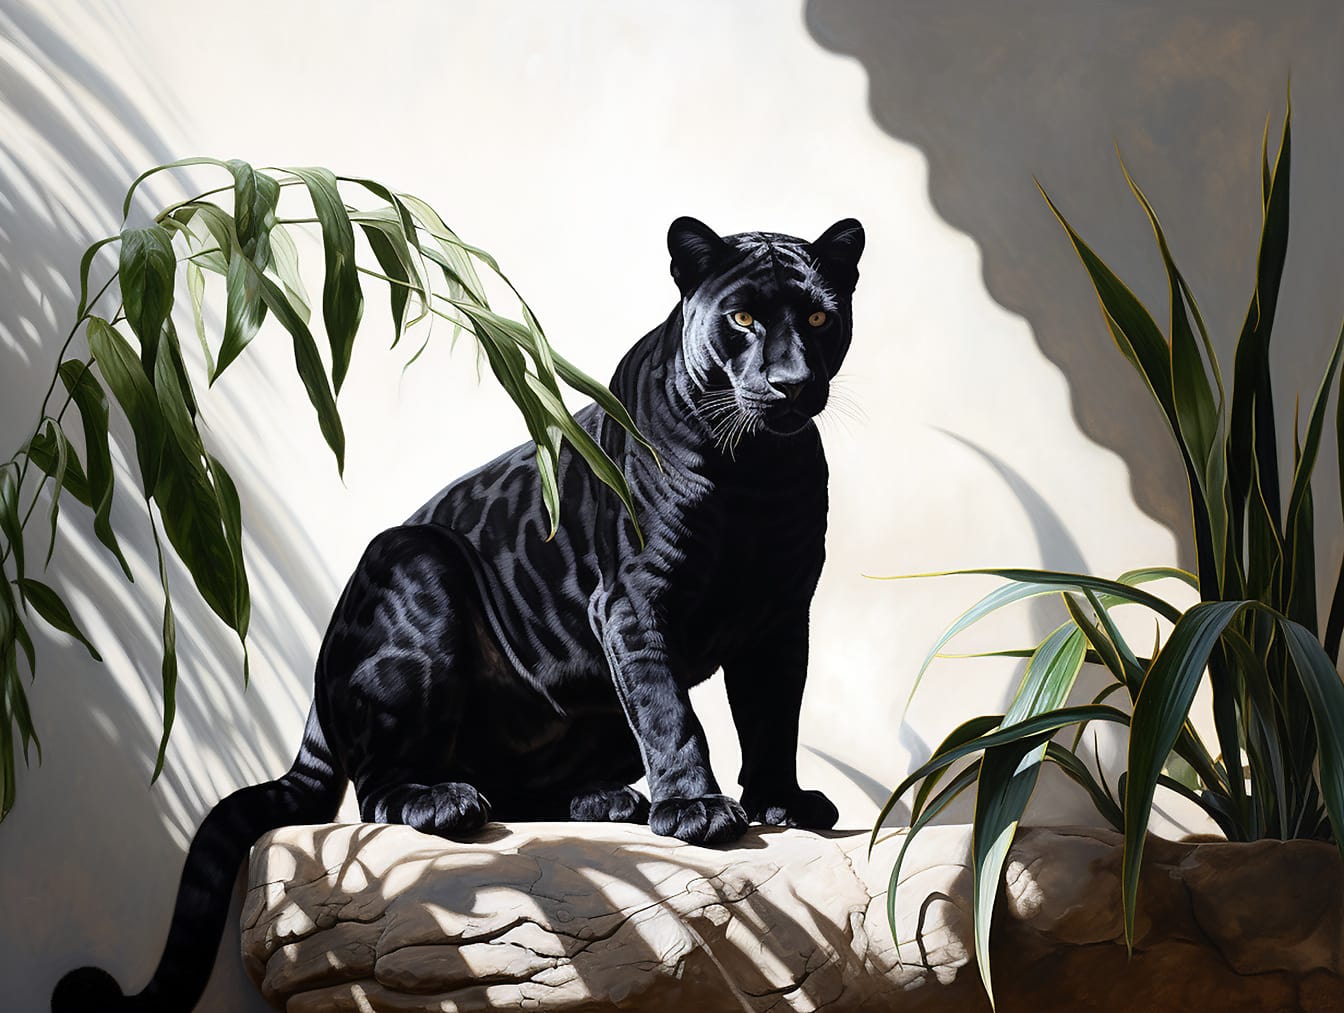 Realistická ilustrace černého pantera sedícího ve stínu